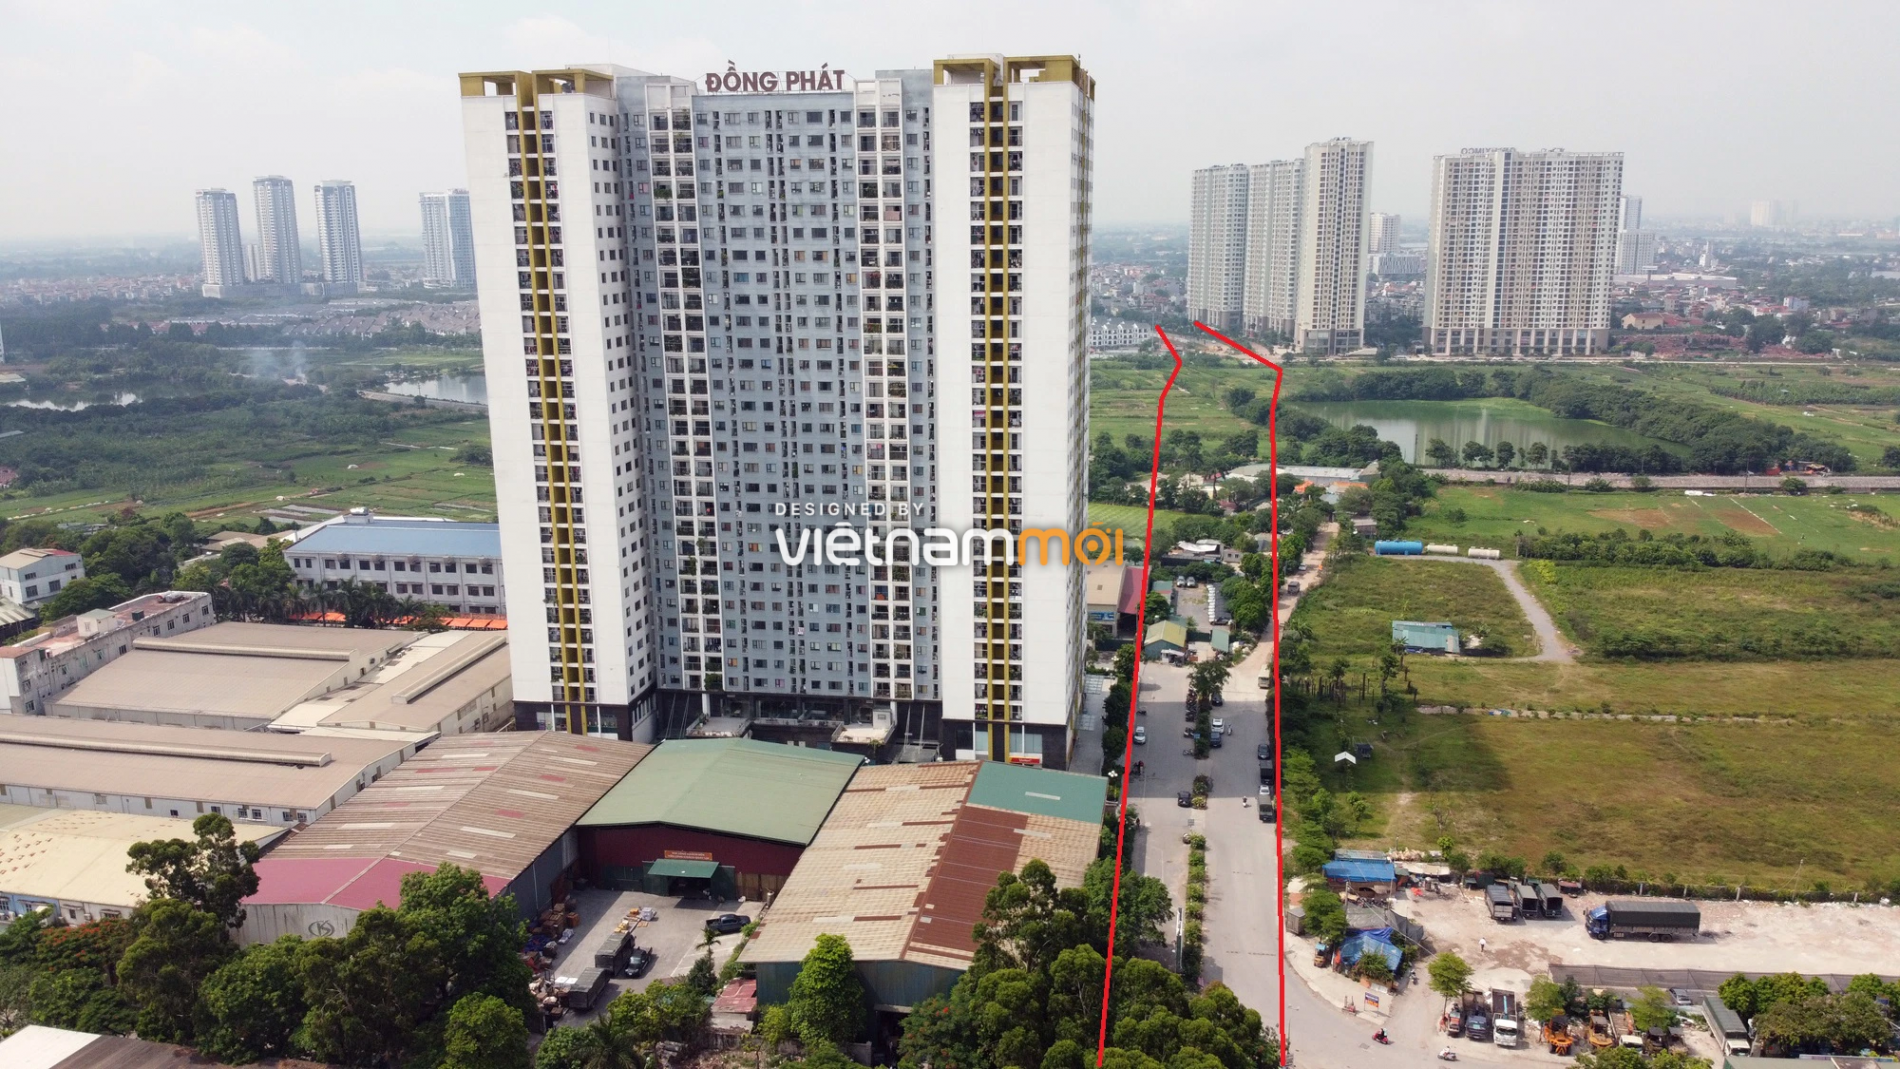 Những khu đất sắp thu hồi để mở đường ở quận Hoàng Mai, Hà Nội (phần 4) - Ảnh 6.